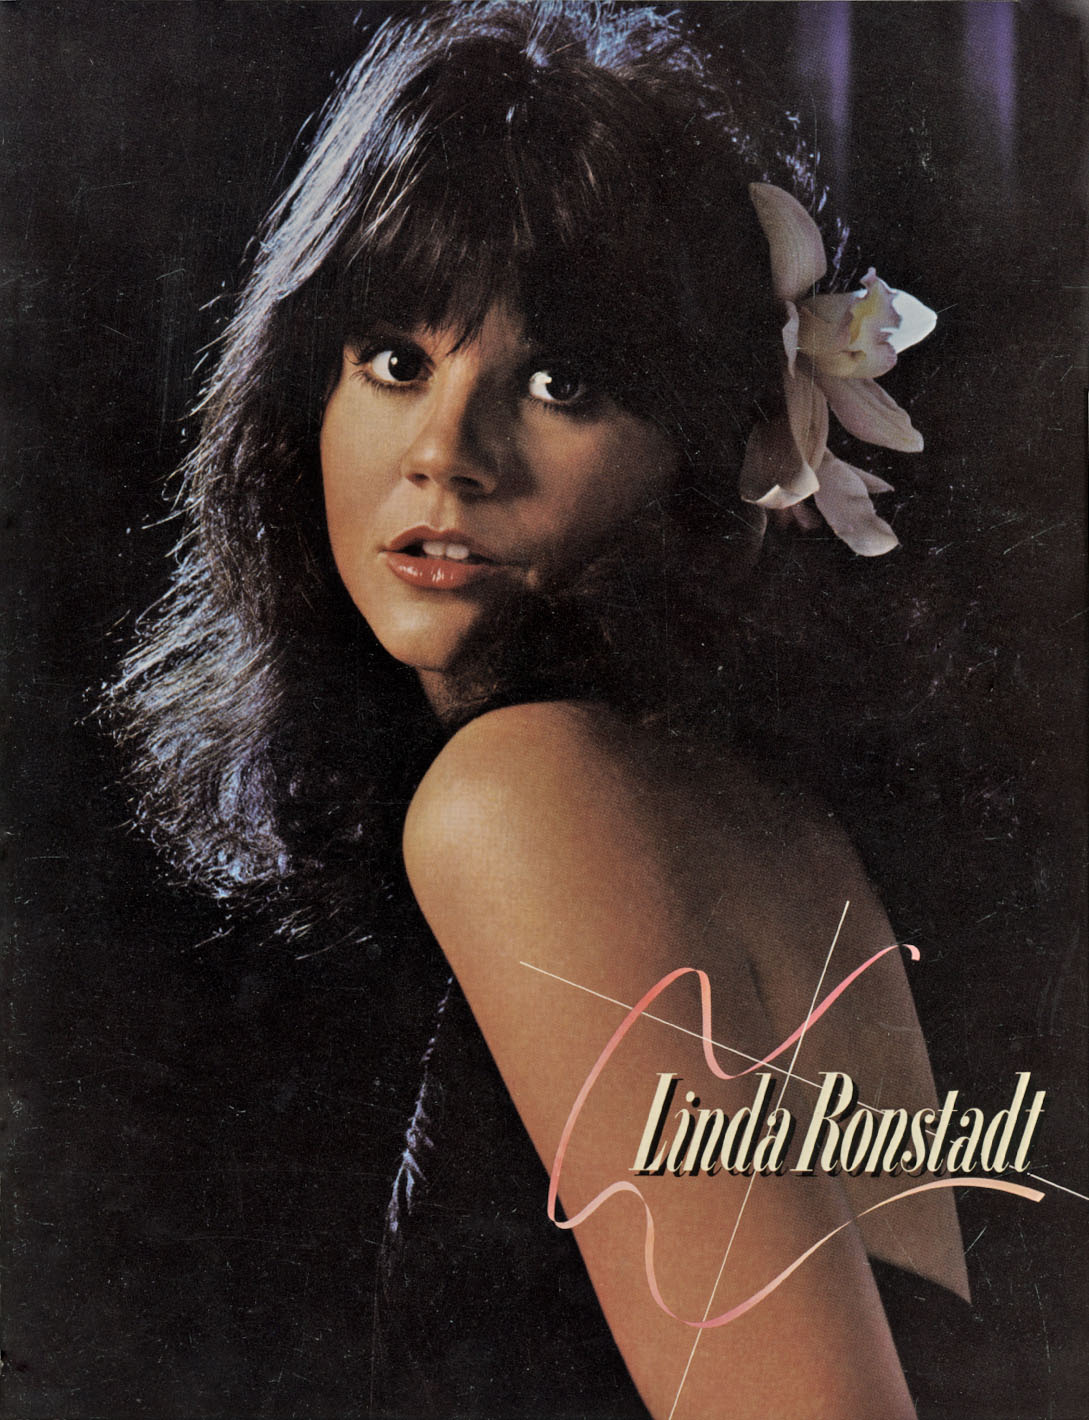 Linda Ronstadt 1977 tour book Simple Dreams